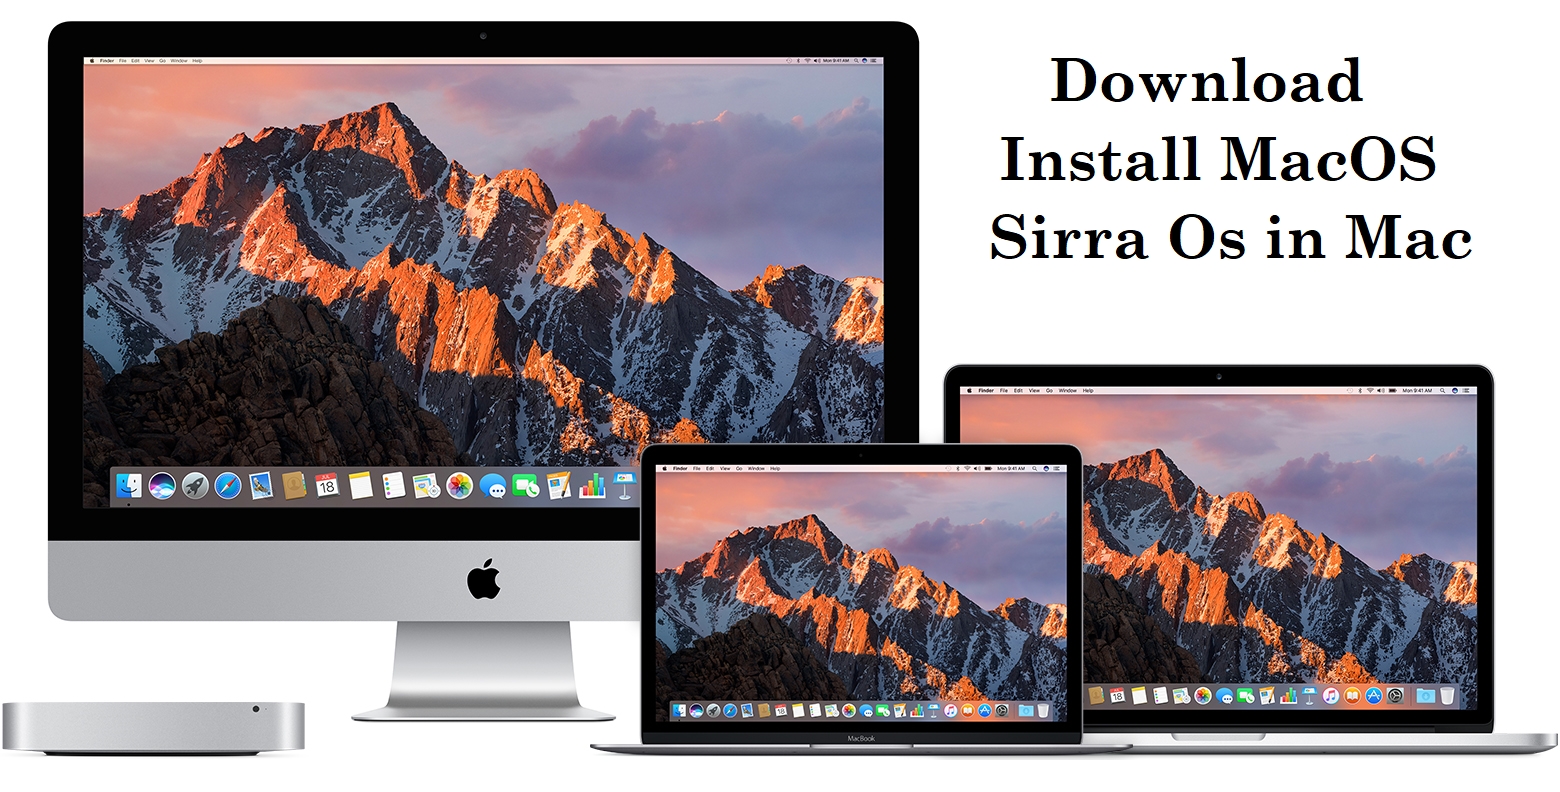 menumeters download mac os sierra 10.12.1